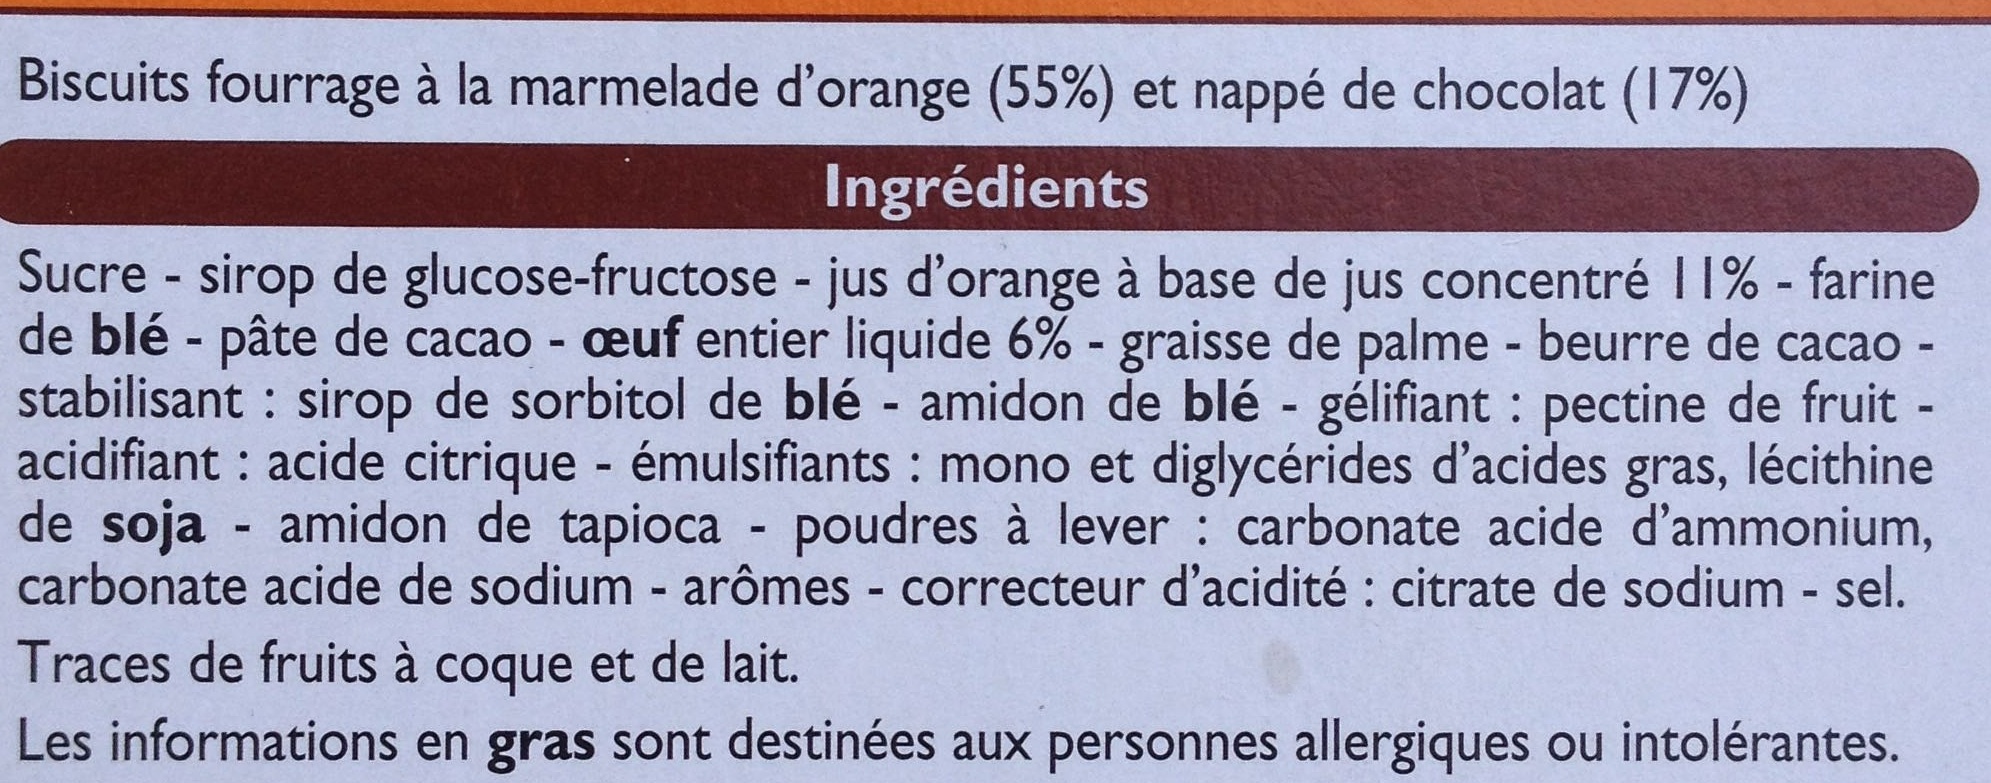 Biscuits fourrés orange - Ingrediënten - fr